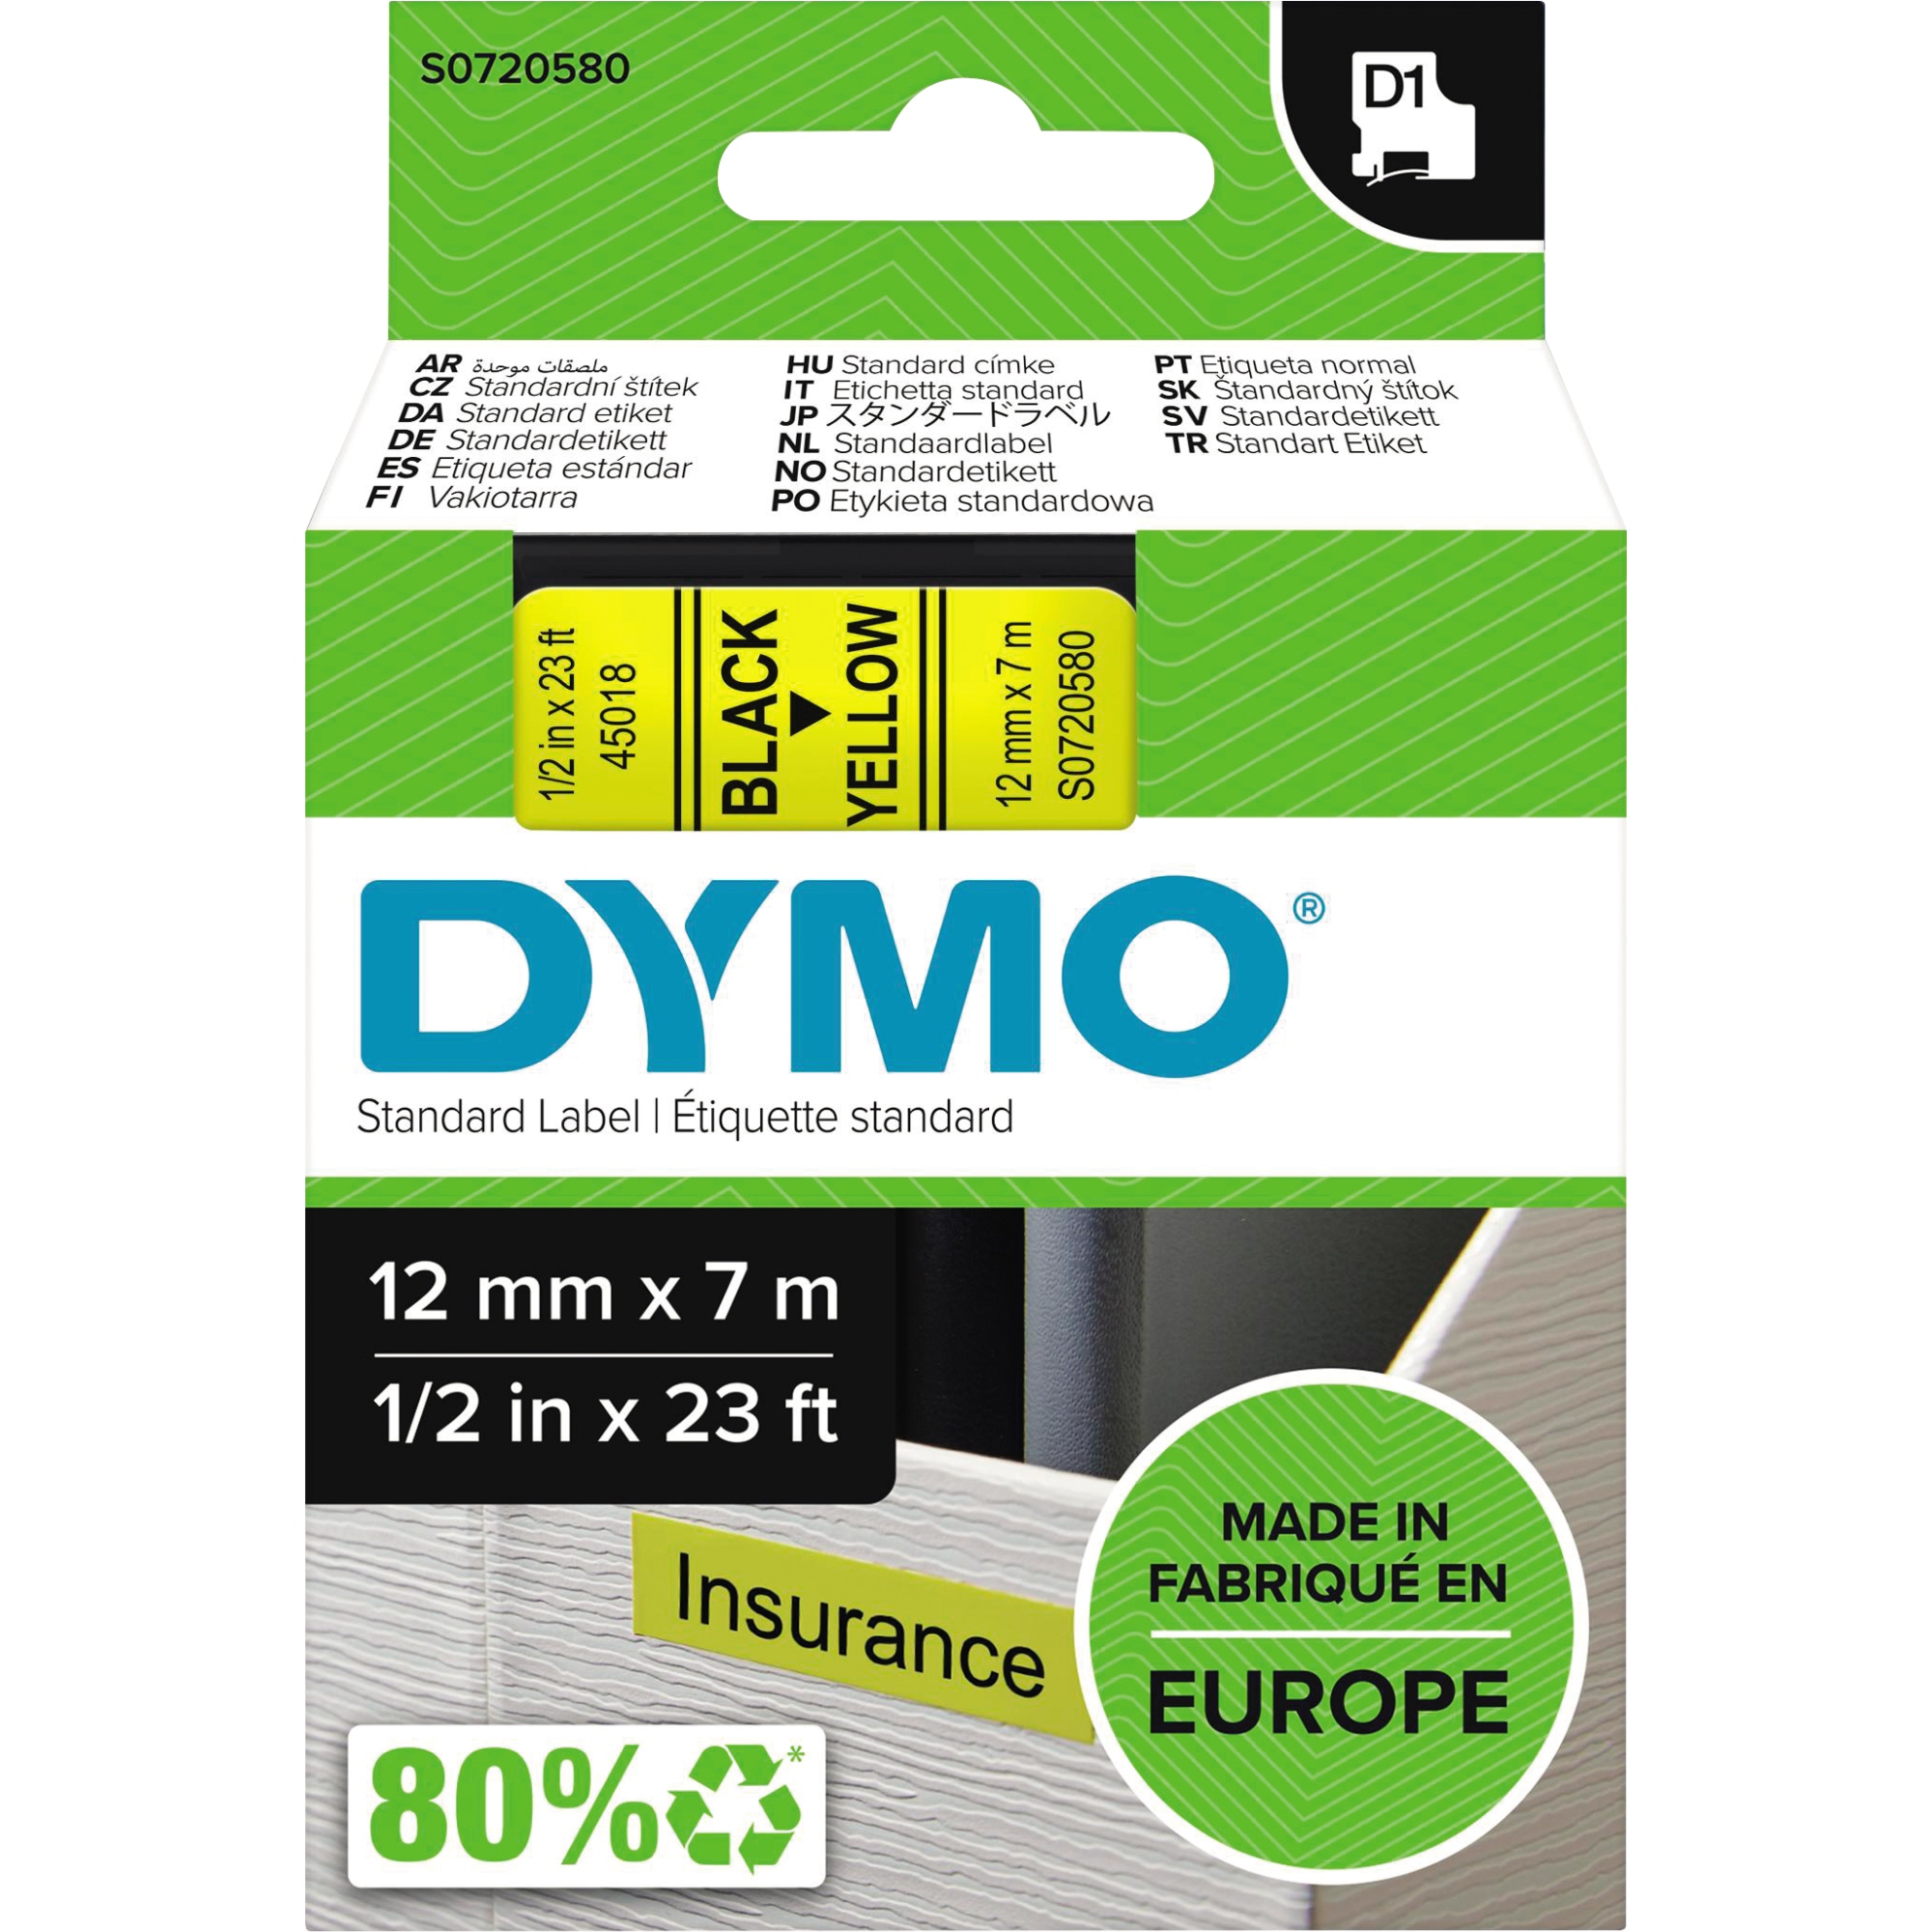 DYMO® Schriftbandkassette D1 12 mm schwarz auf gelb